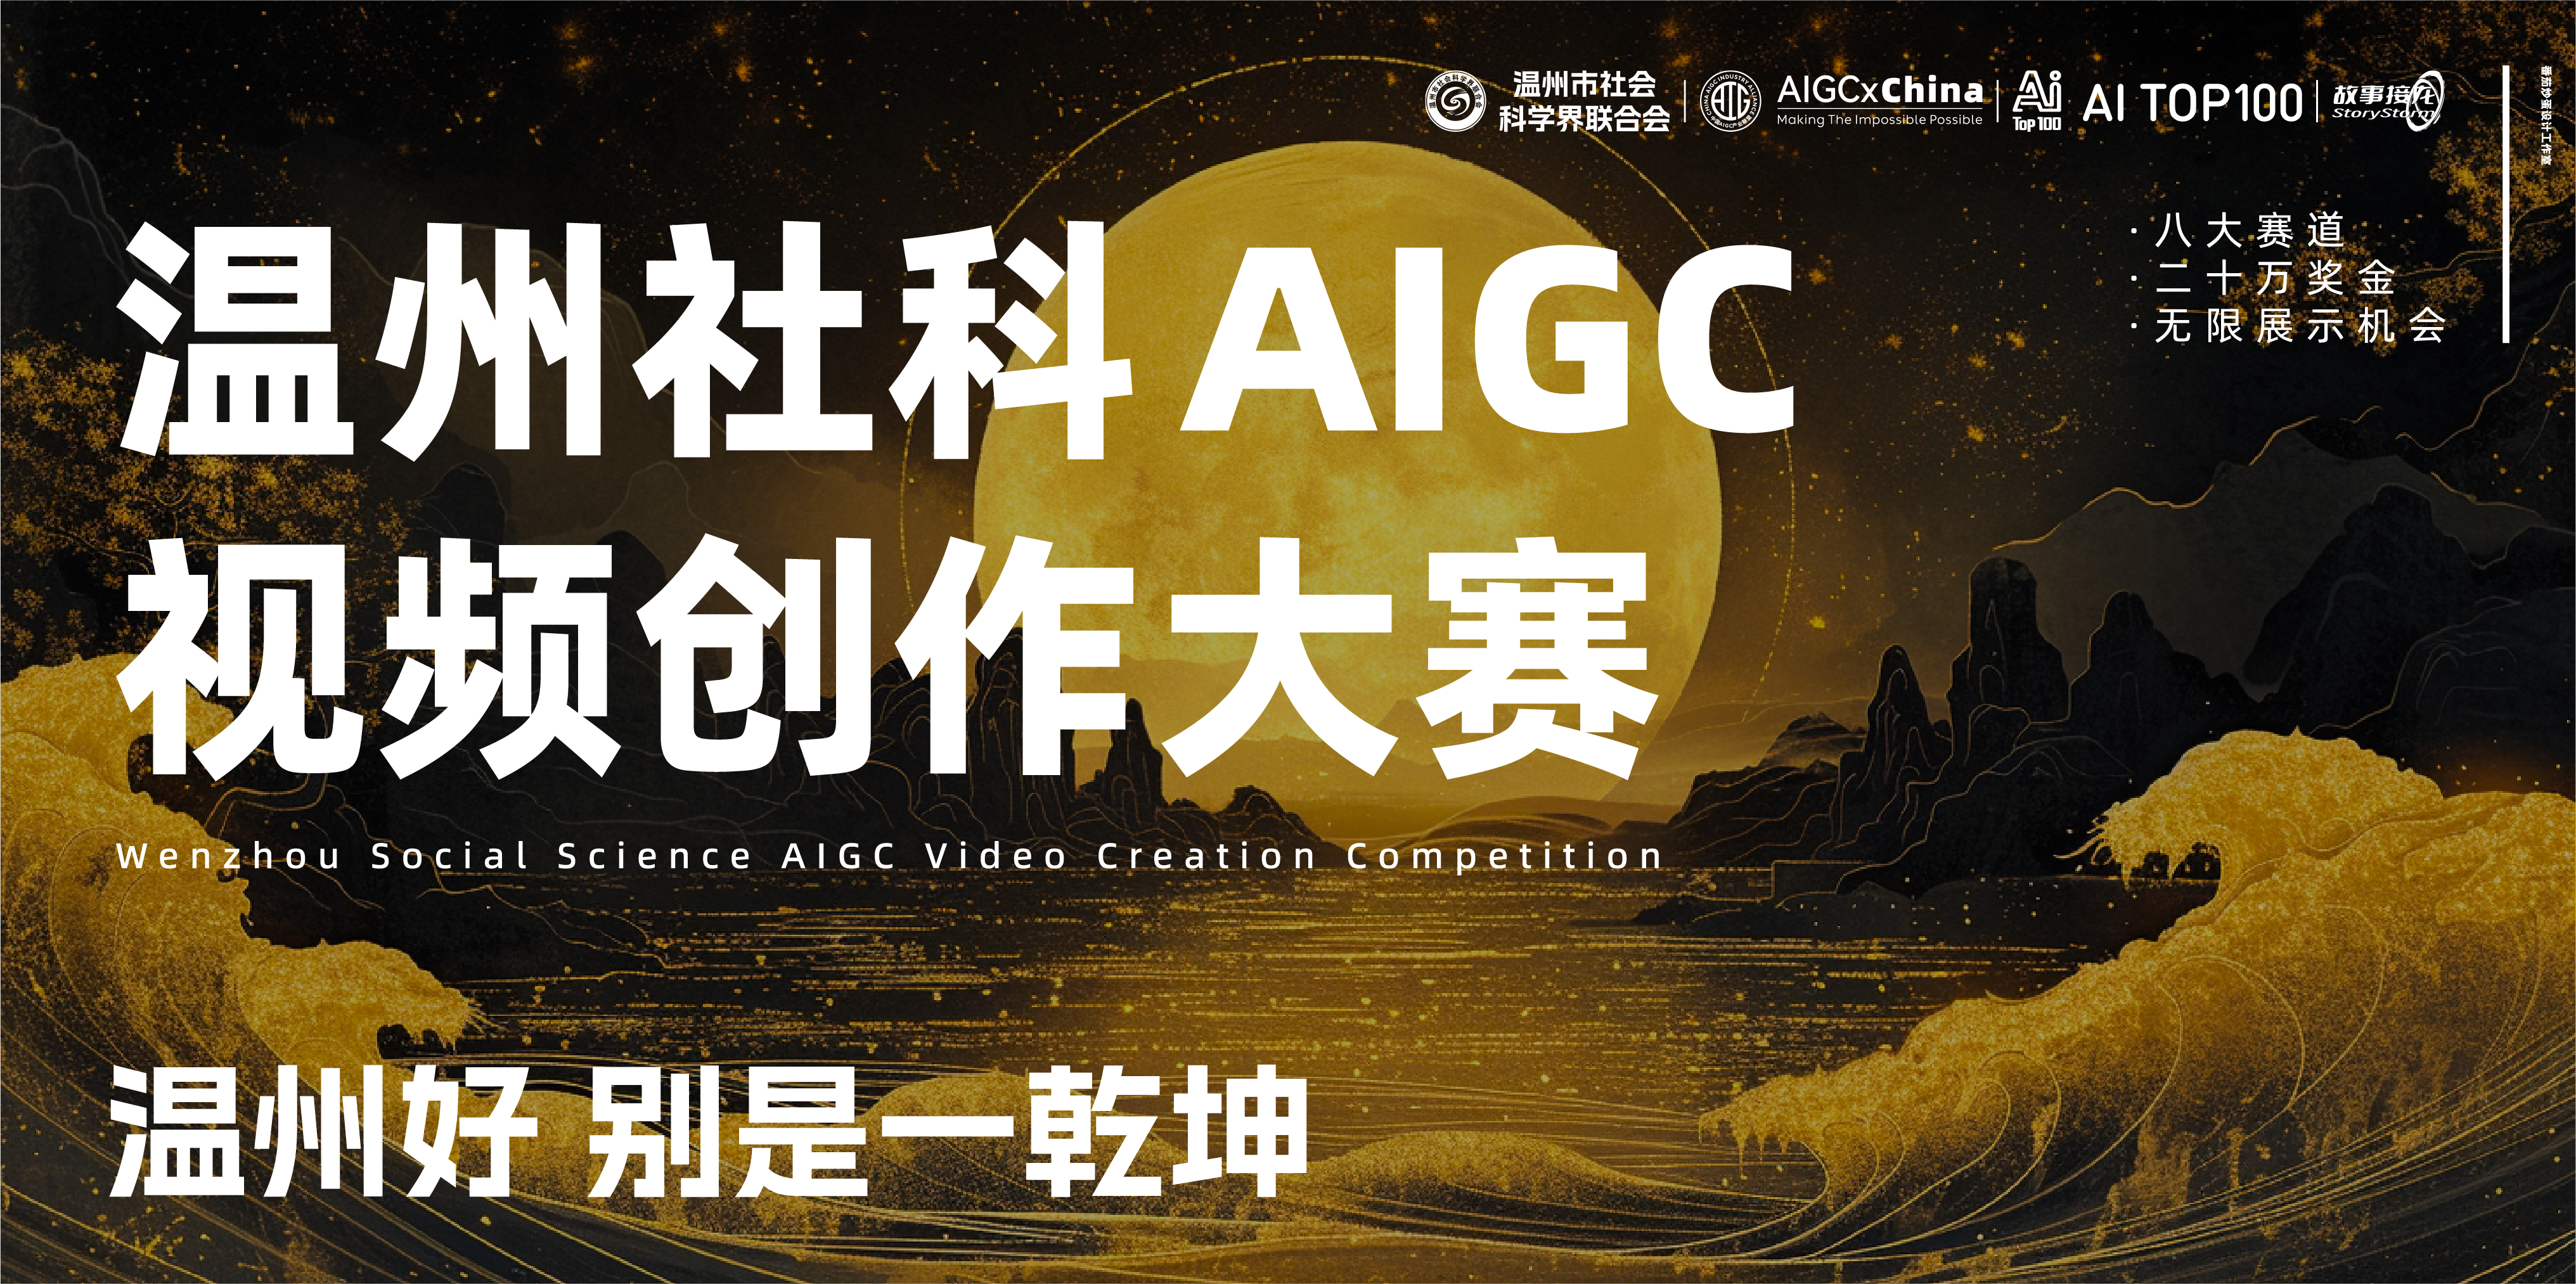 温州社科AIGC视频创作大赛